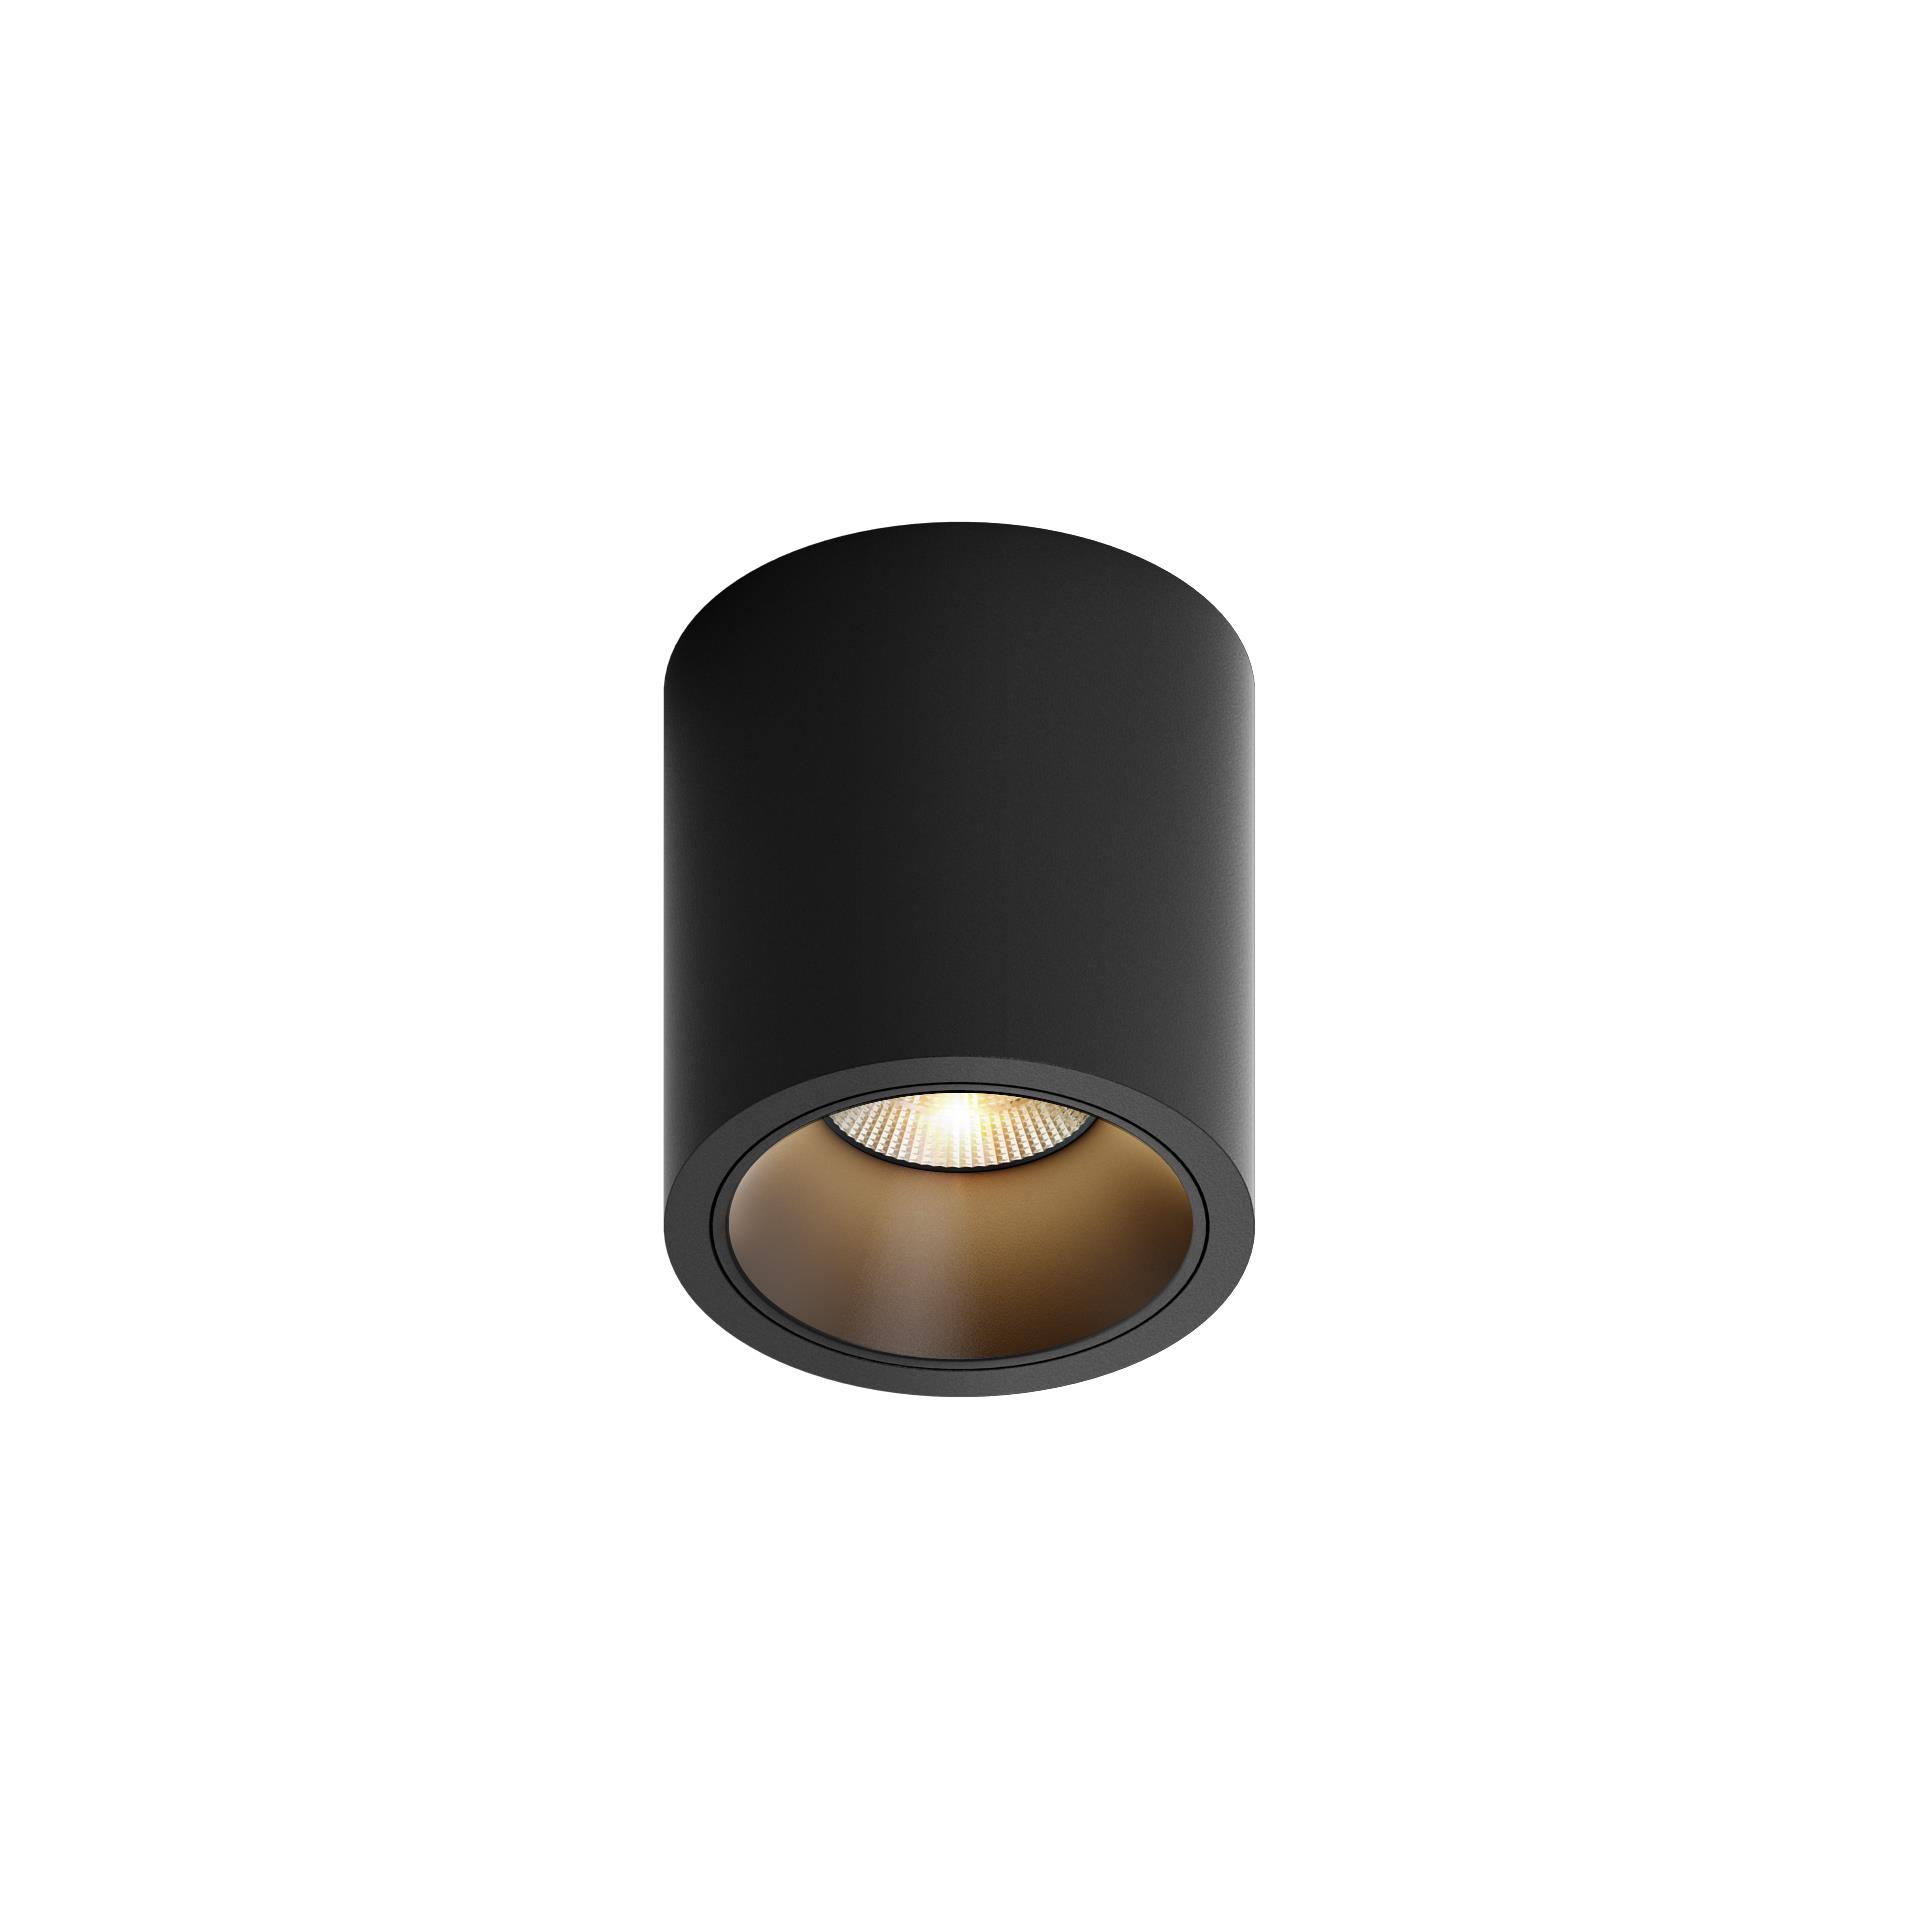 MR CUTE ROUND LED, oprawa natynkowa, kolor czarny